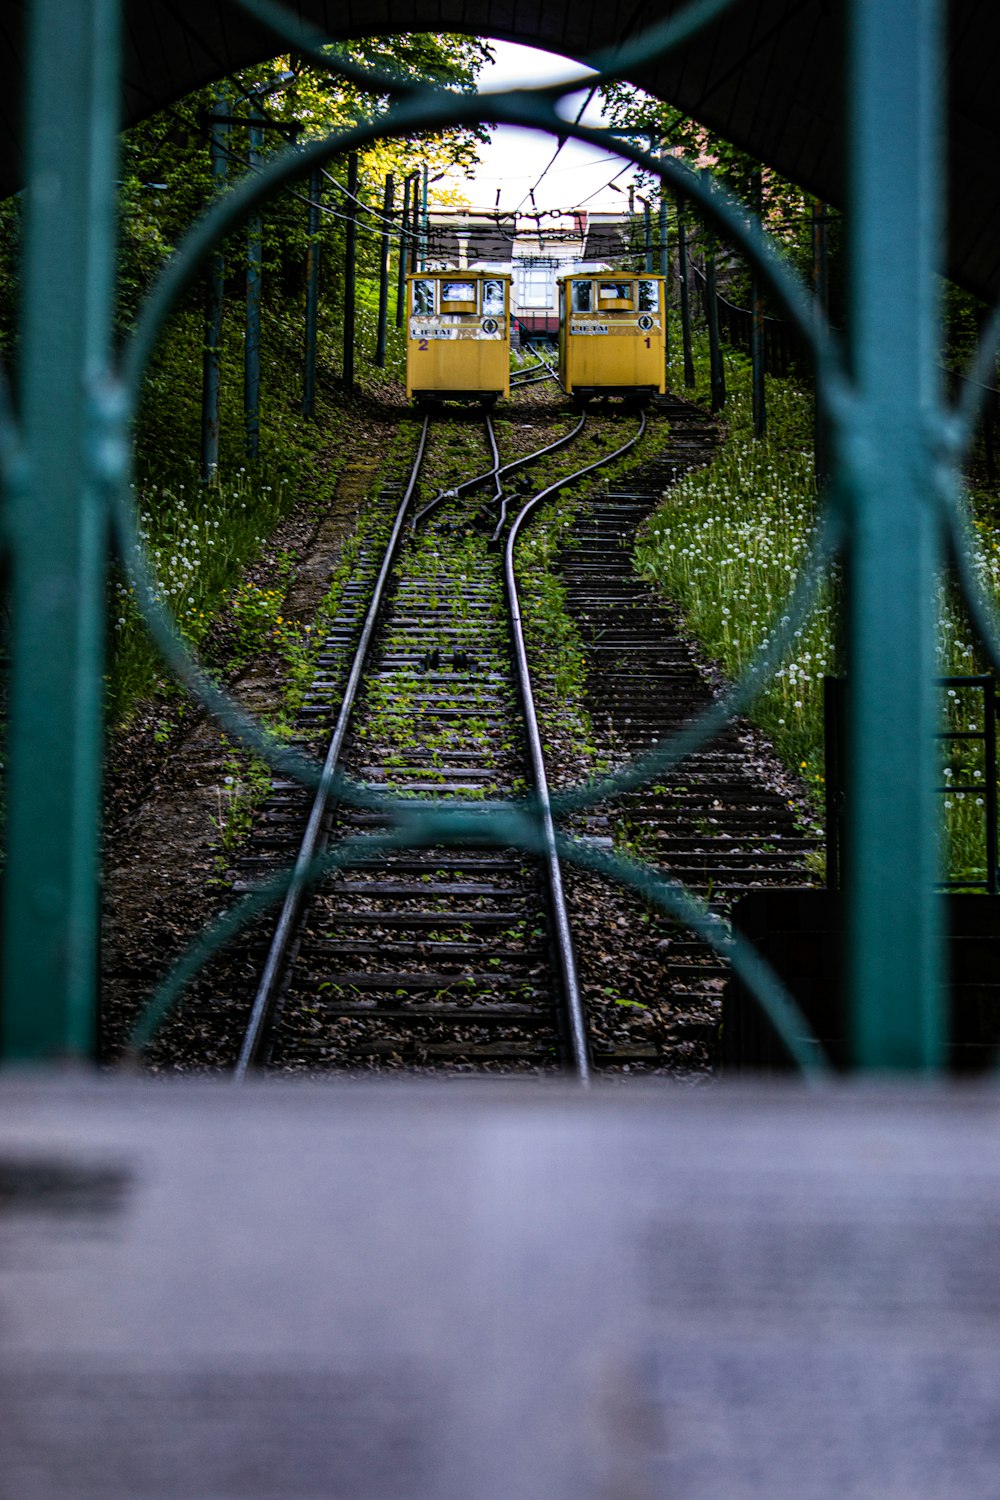 treno giallo sui binari ferroviari